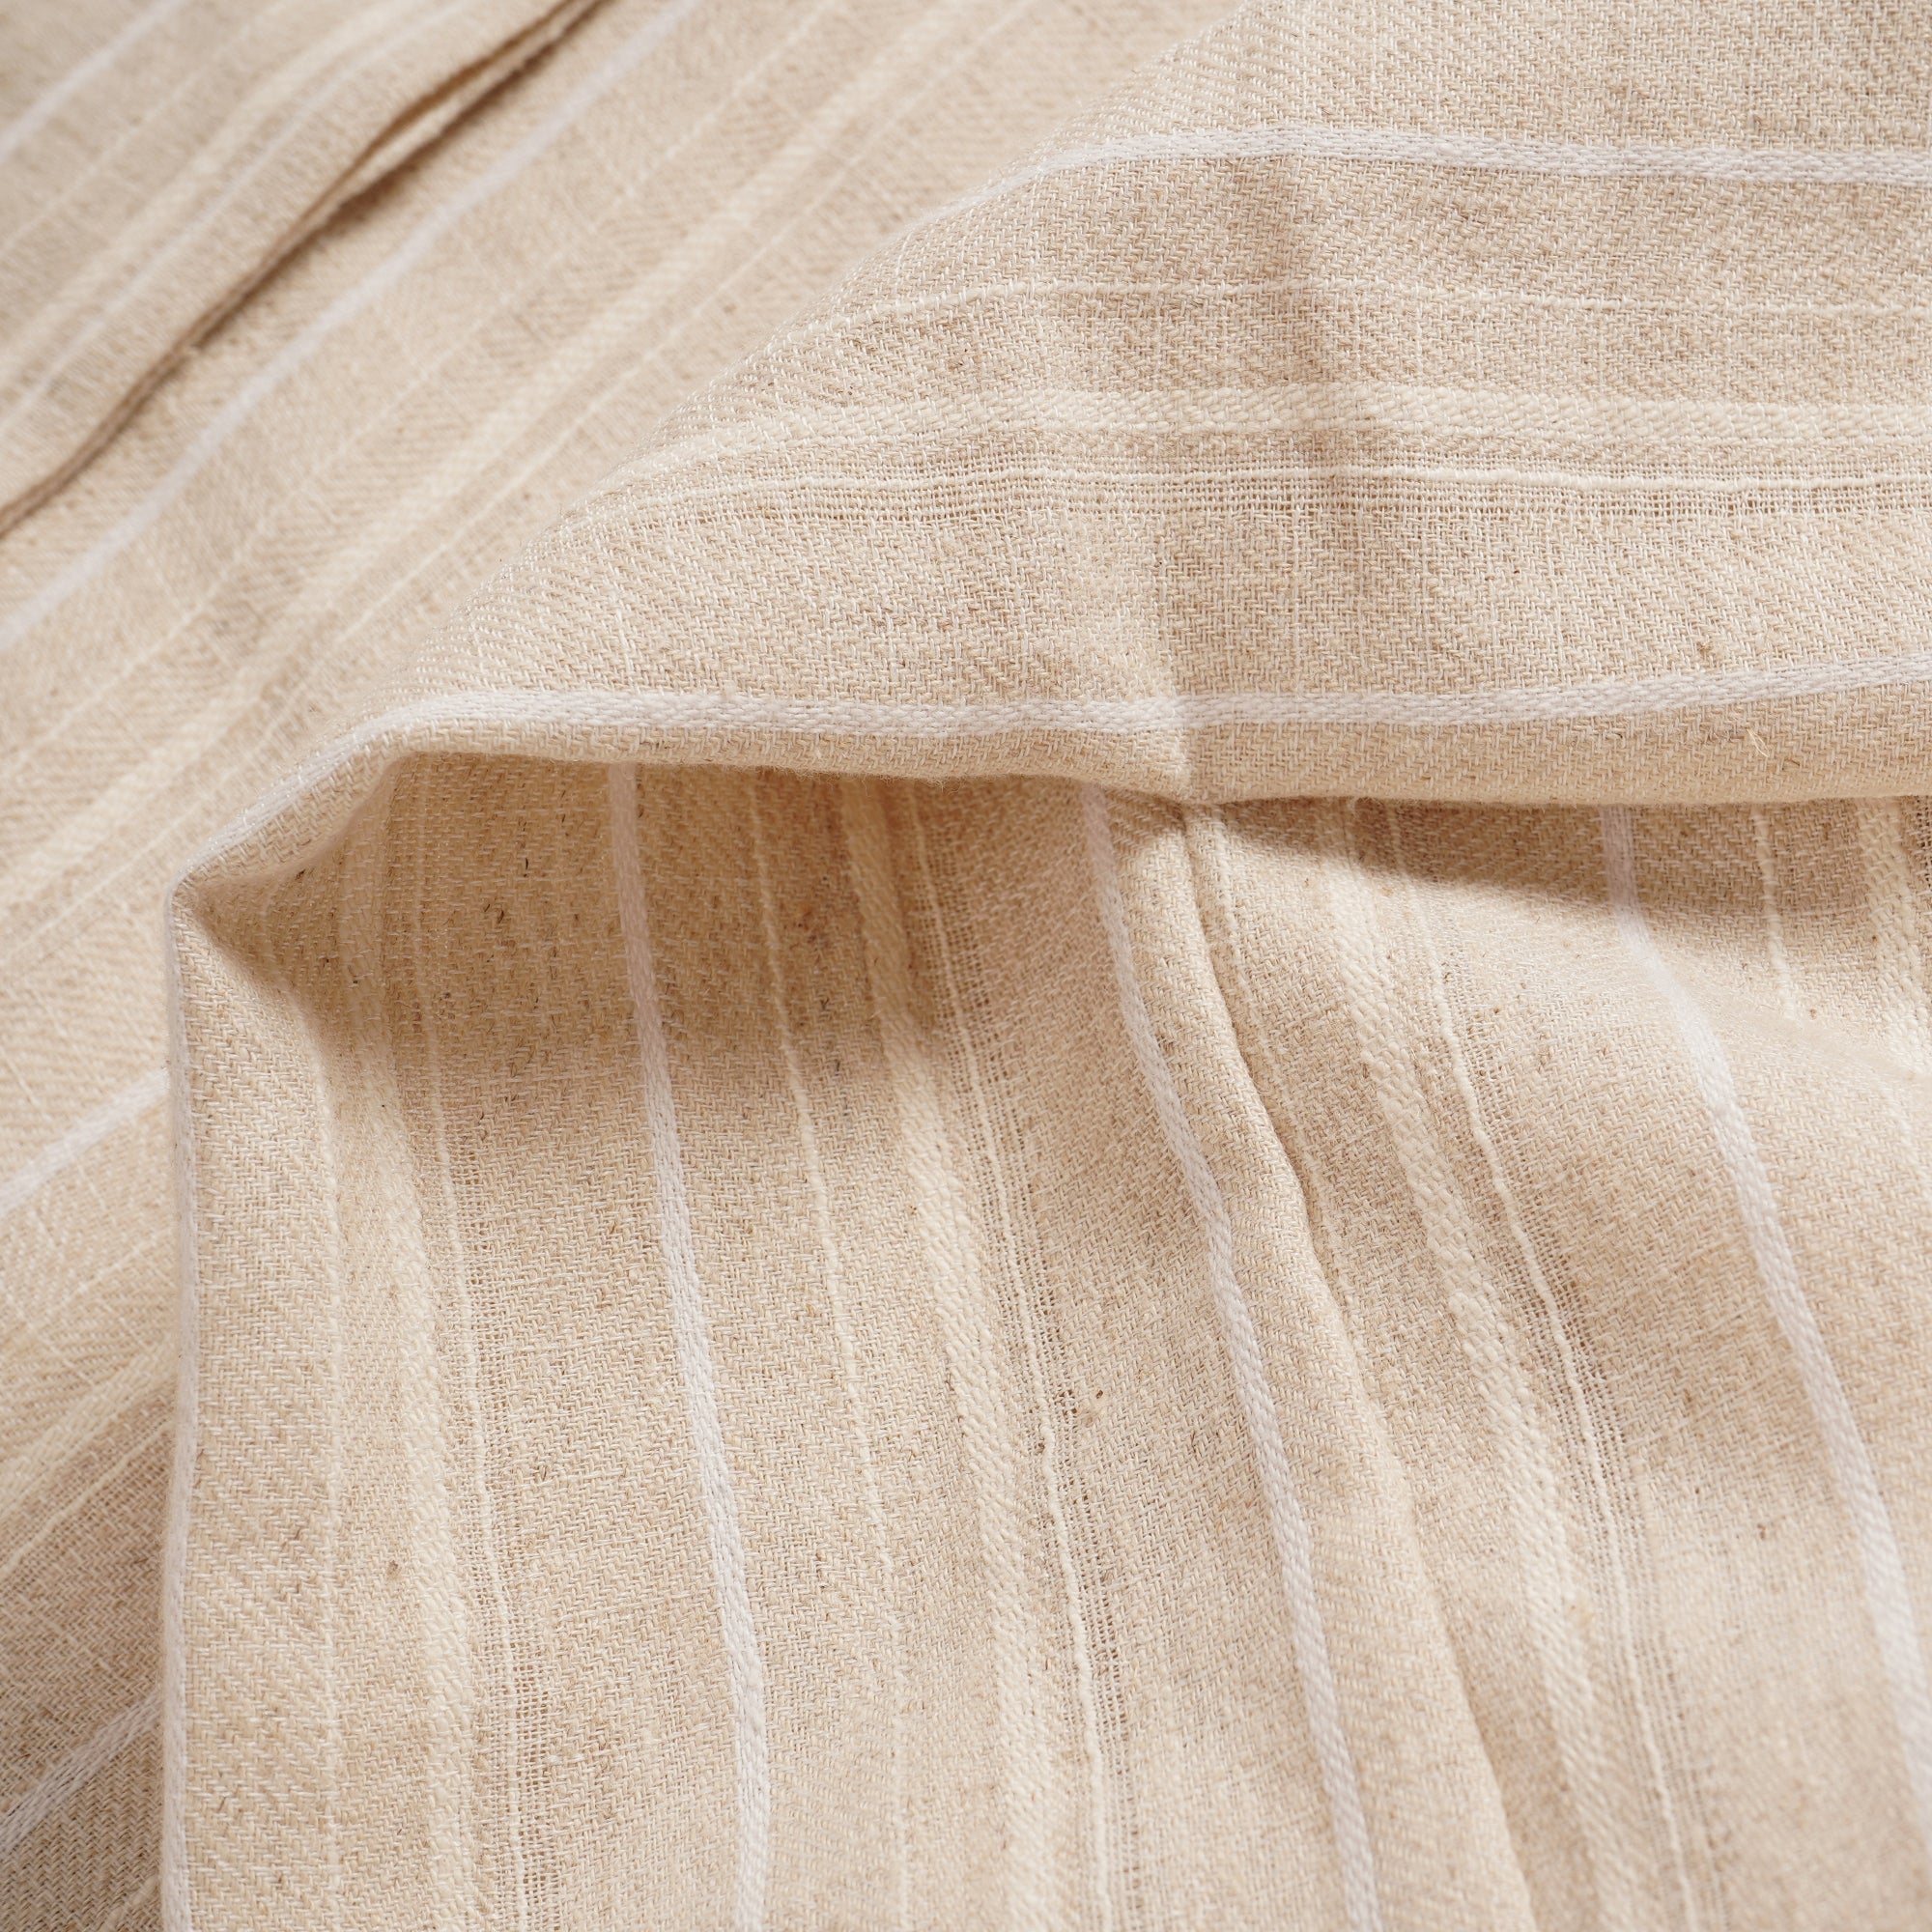 Natural Striped Linen Blend Shirt